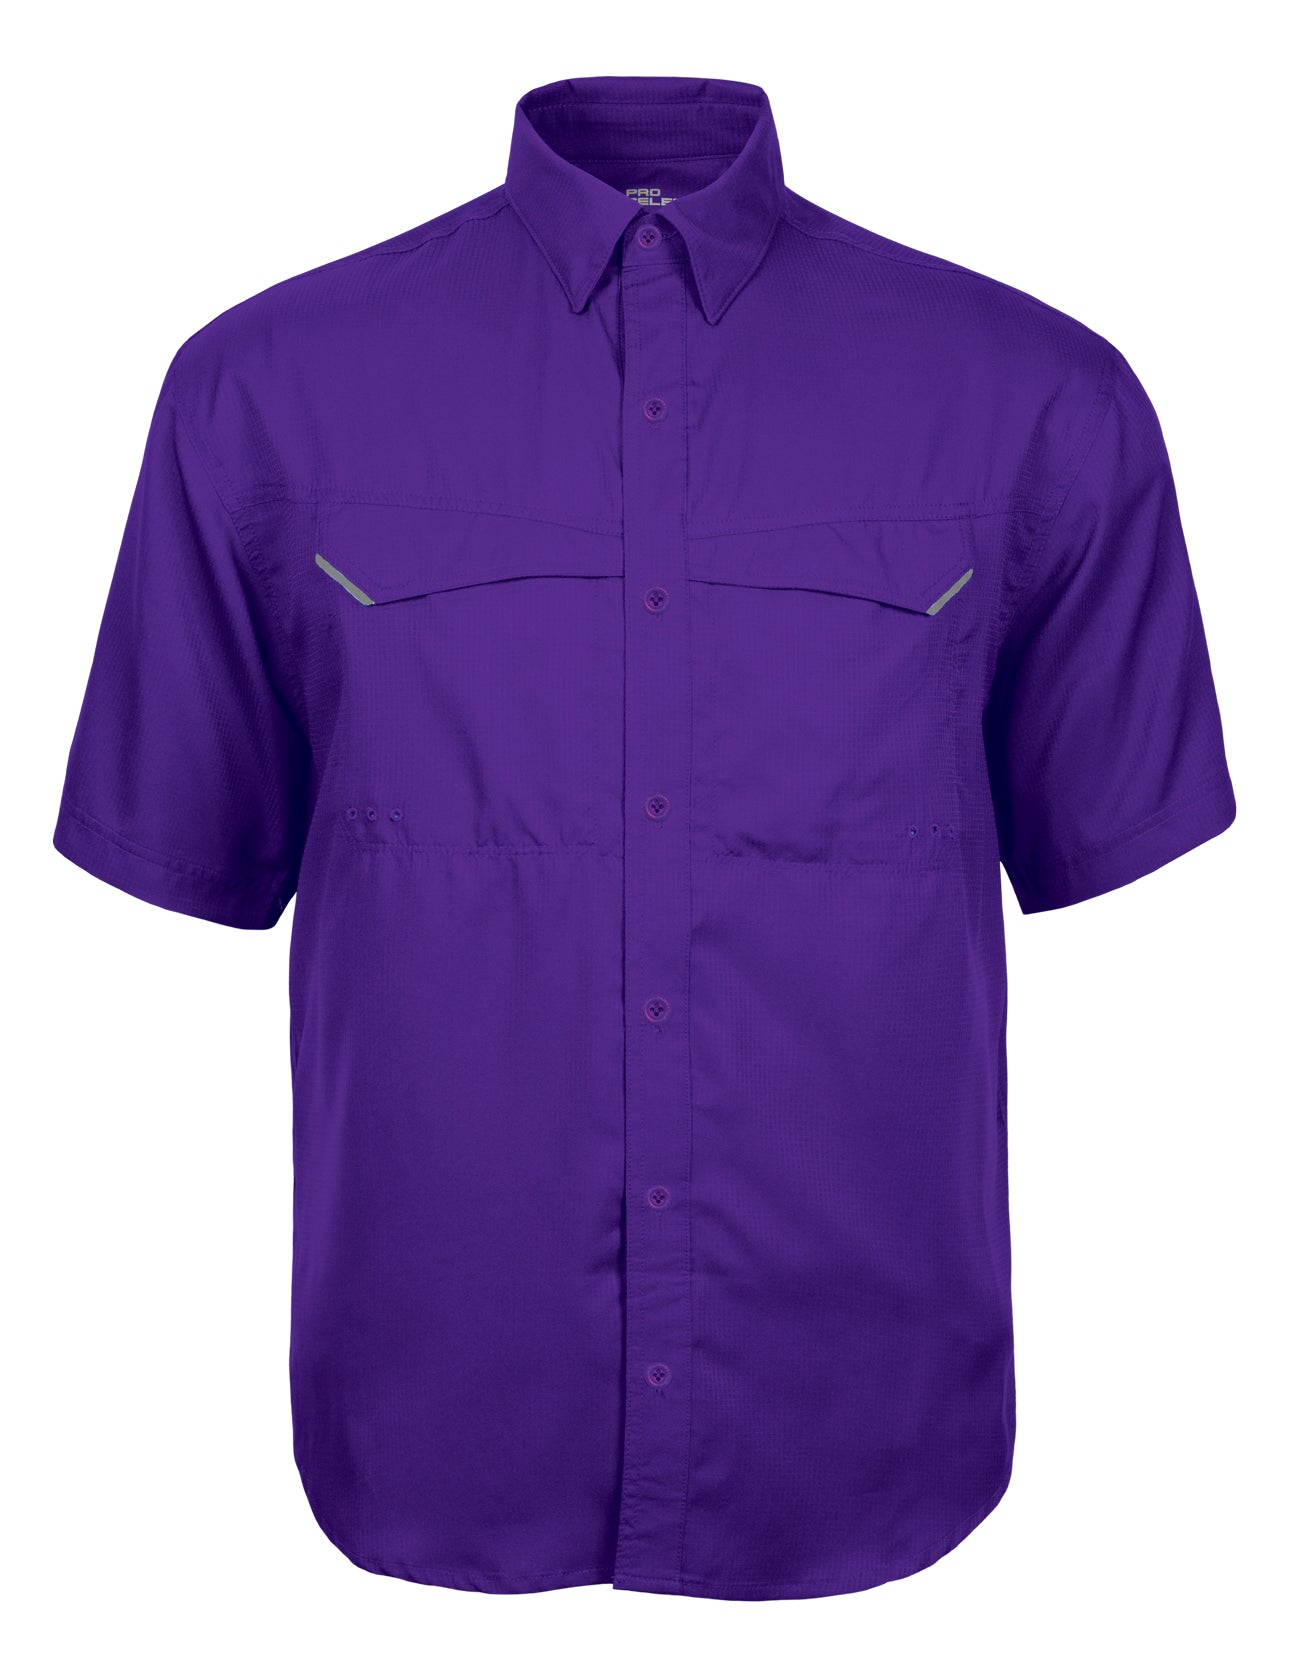 Short Sleeve Lavender Dress Shirt, Button Down